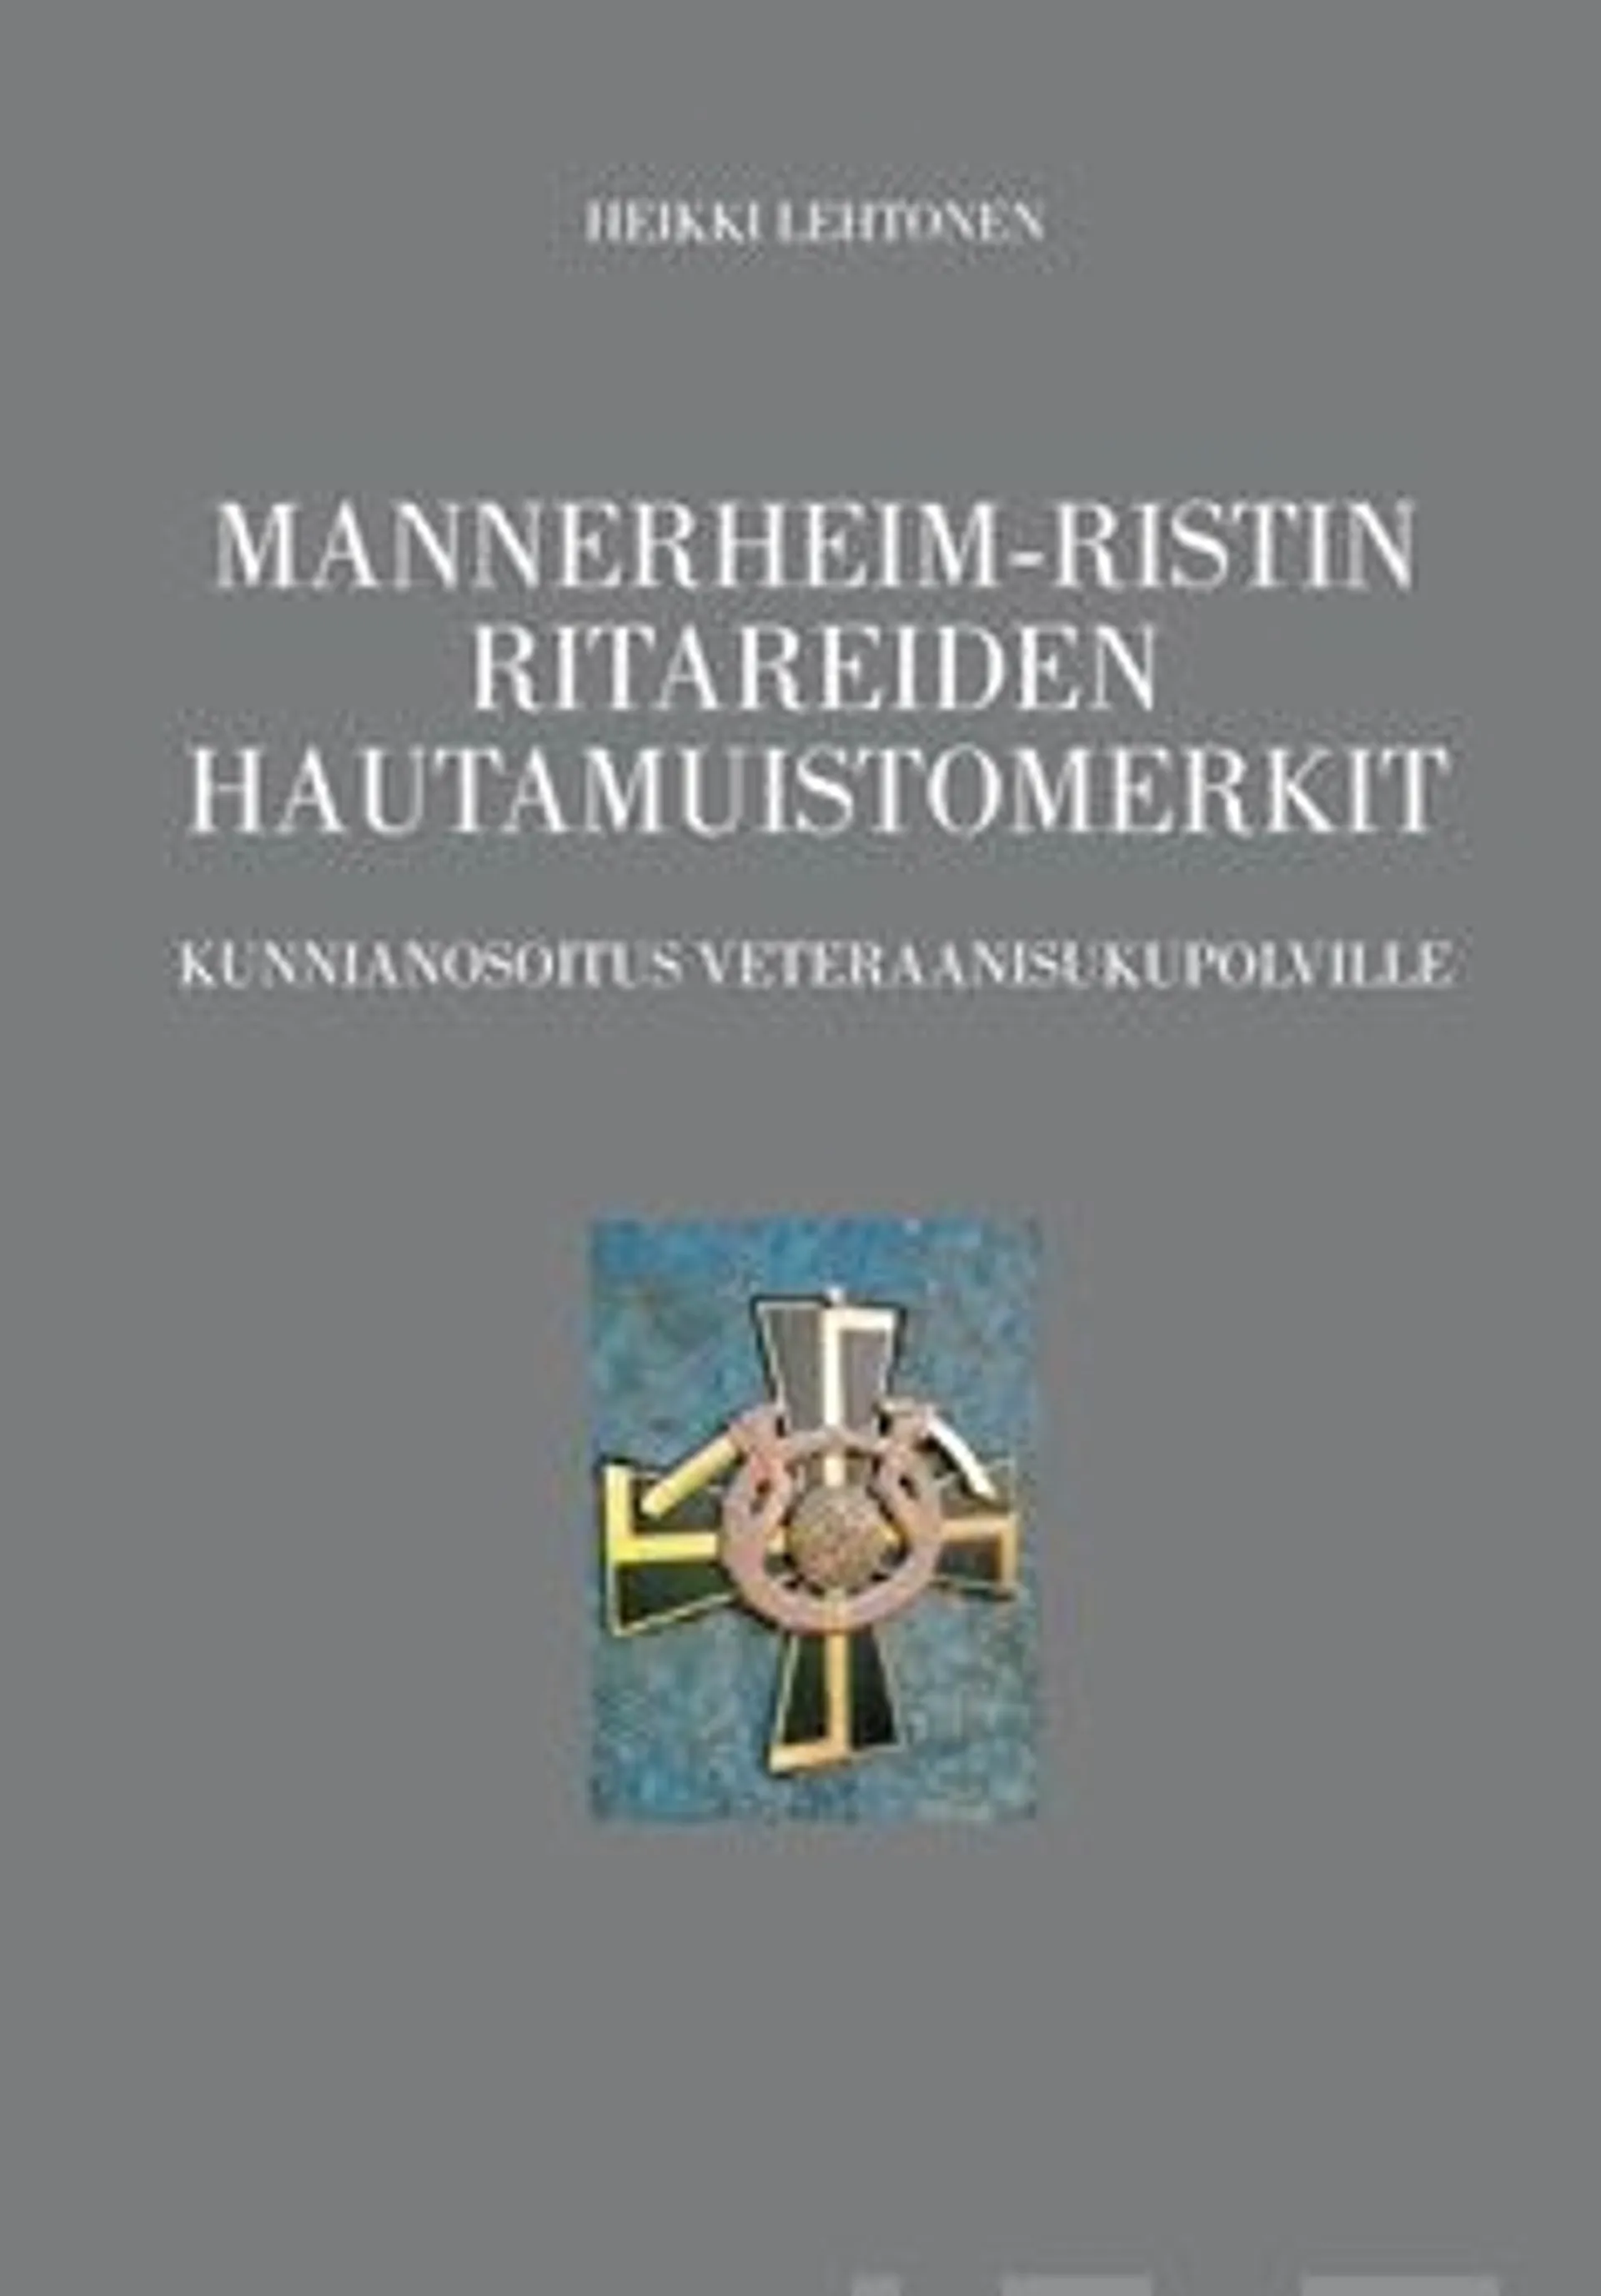 Lehtonen, Mannerheim-ristin ritareiden hautamuistomerkit